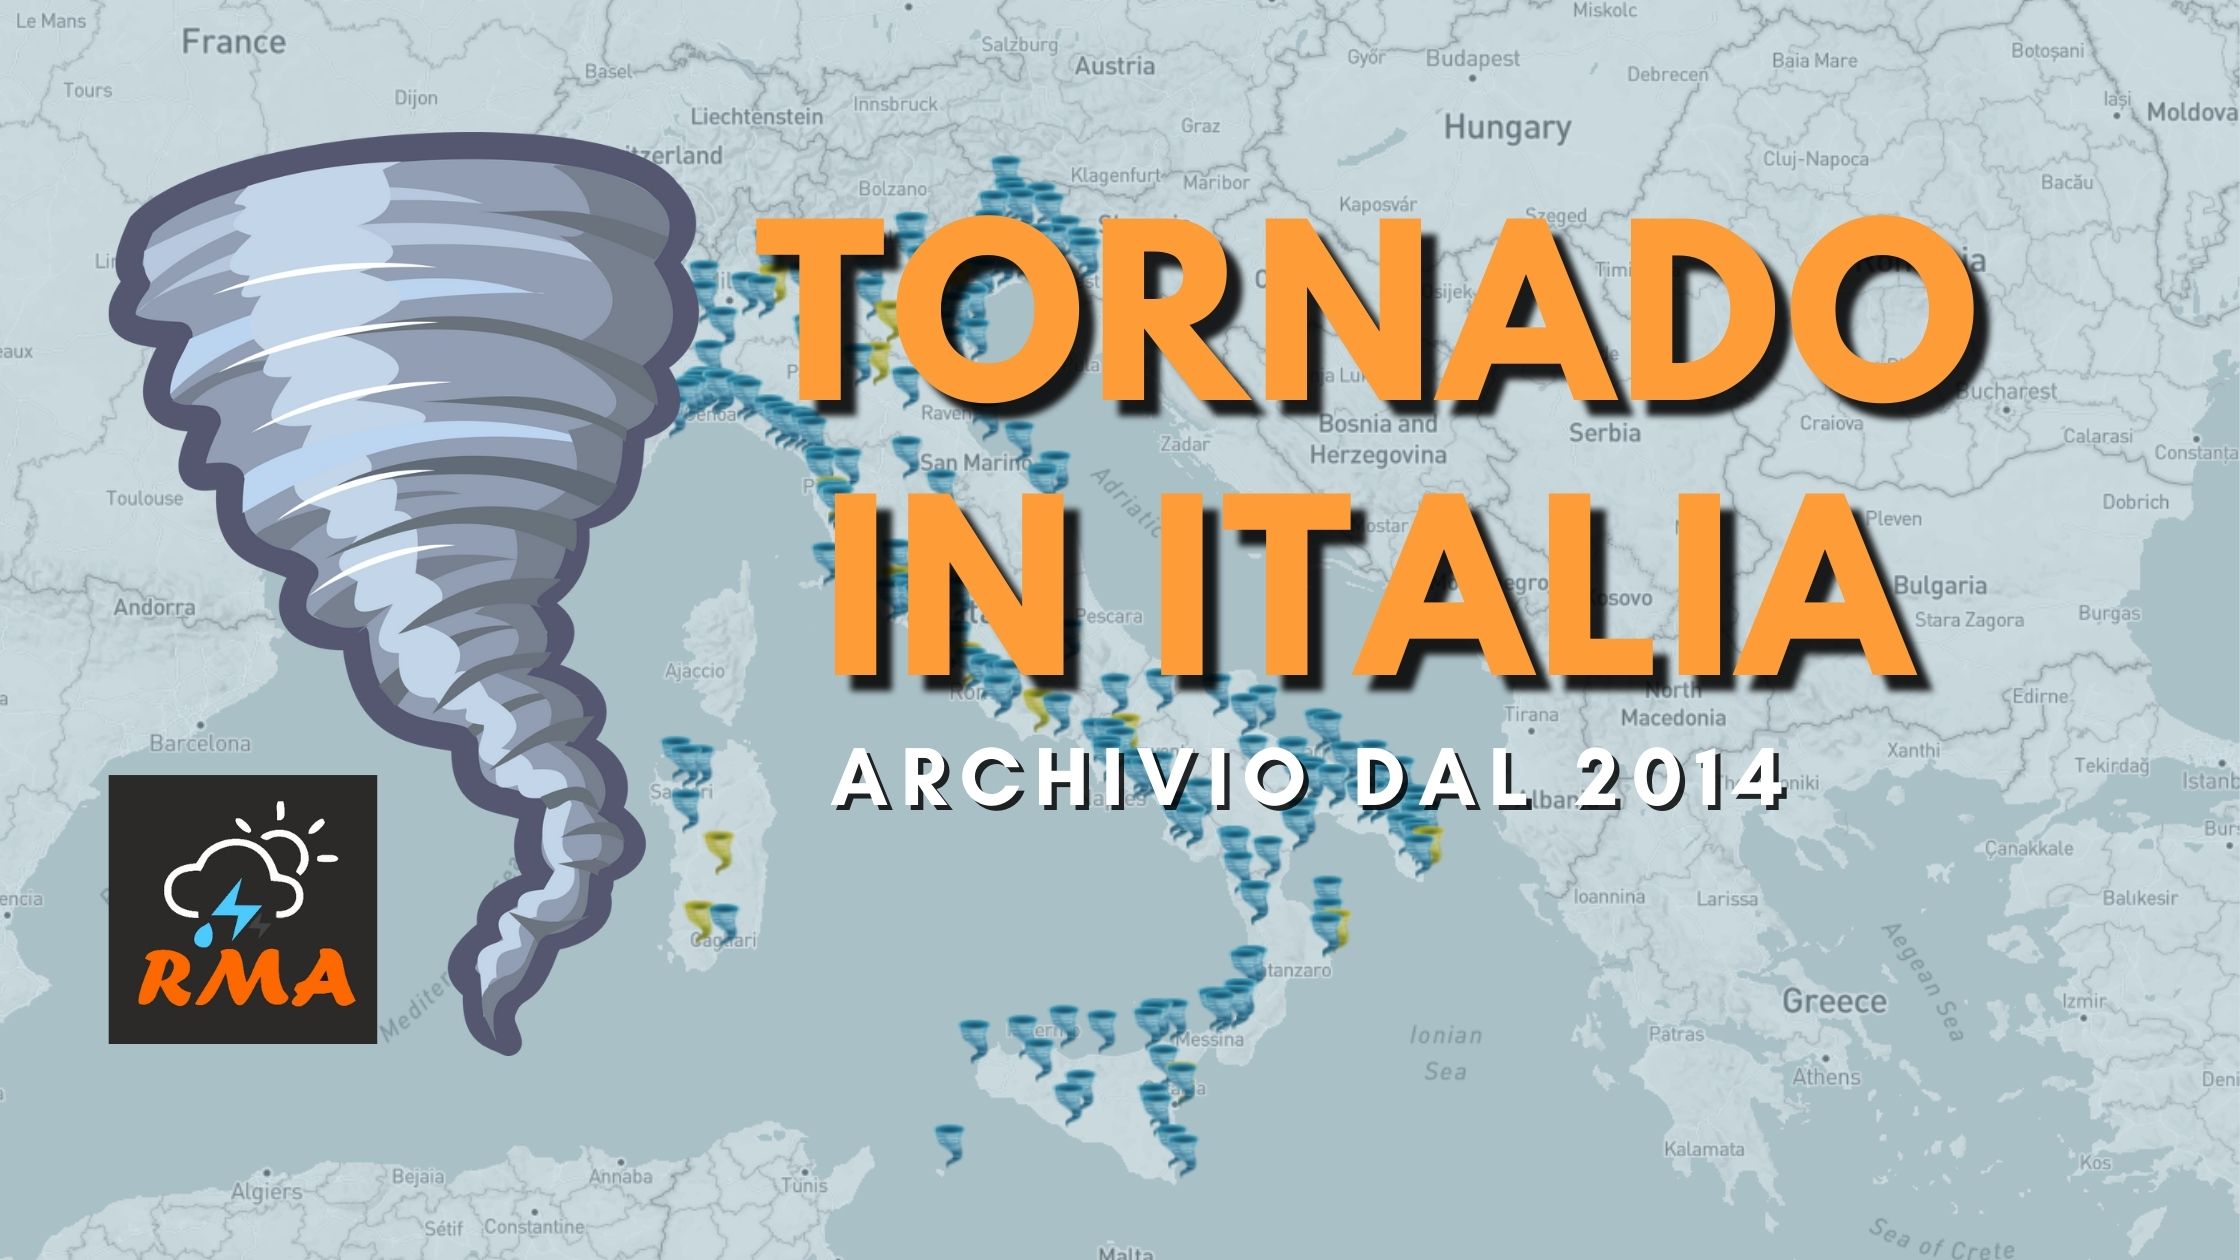 Tornado in Italia l'archivio completo dal 2014